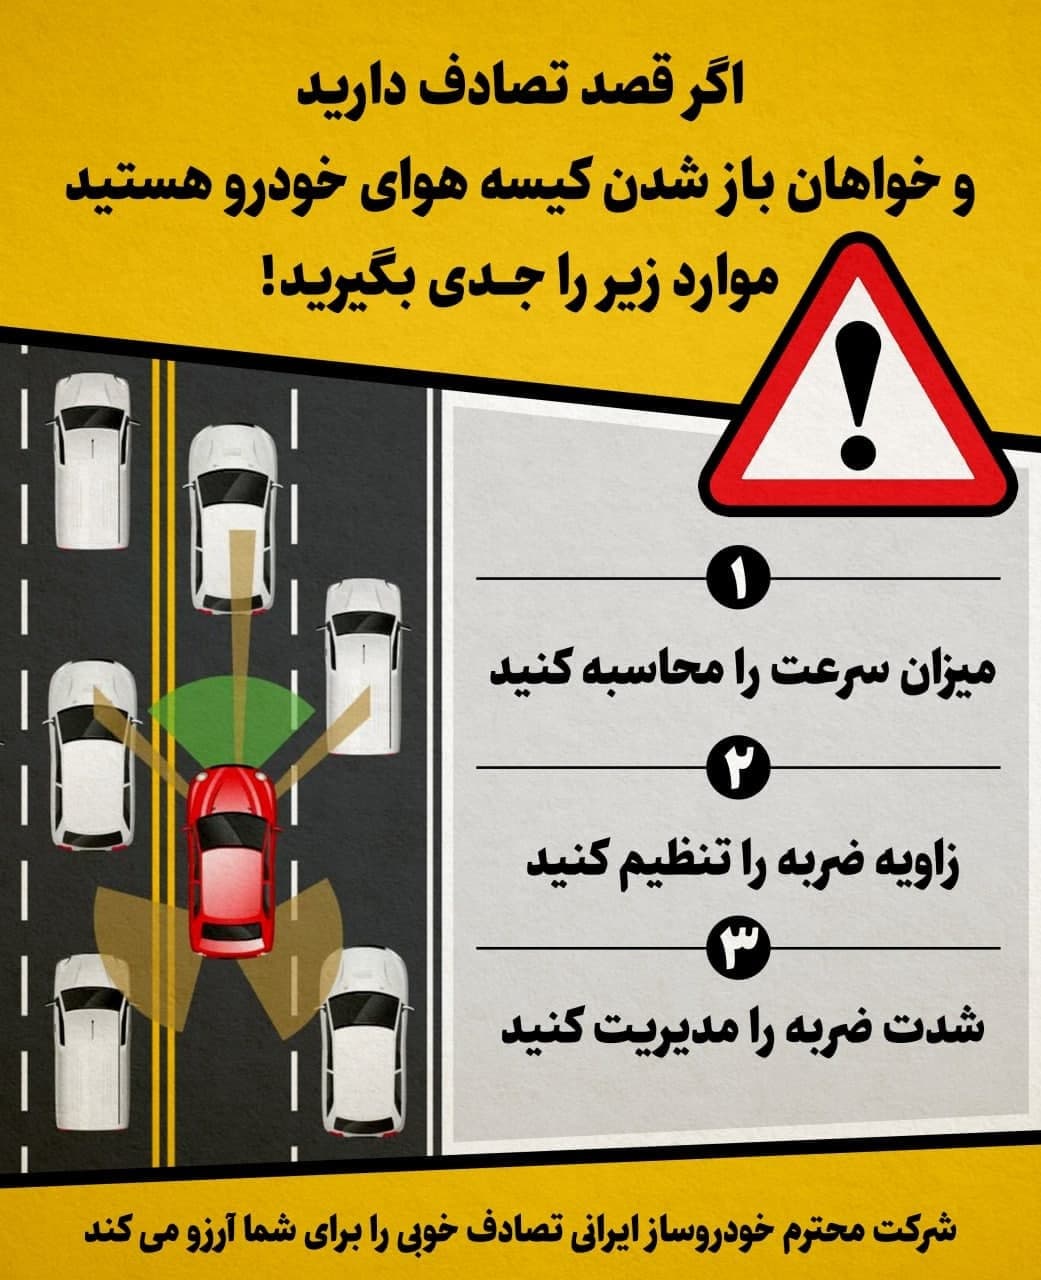 لطفا در جهت مناسب تصادف کنید!